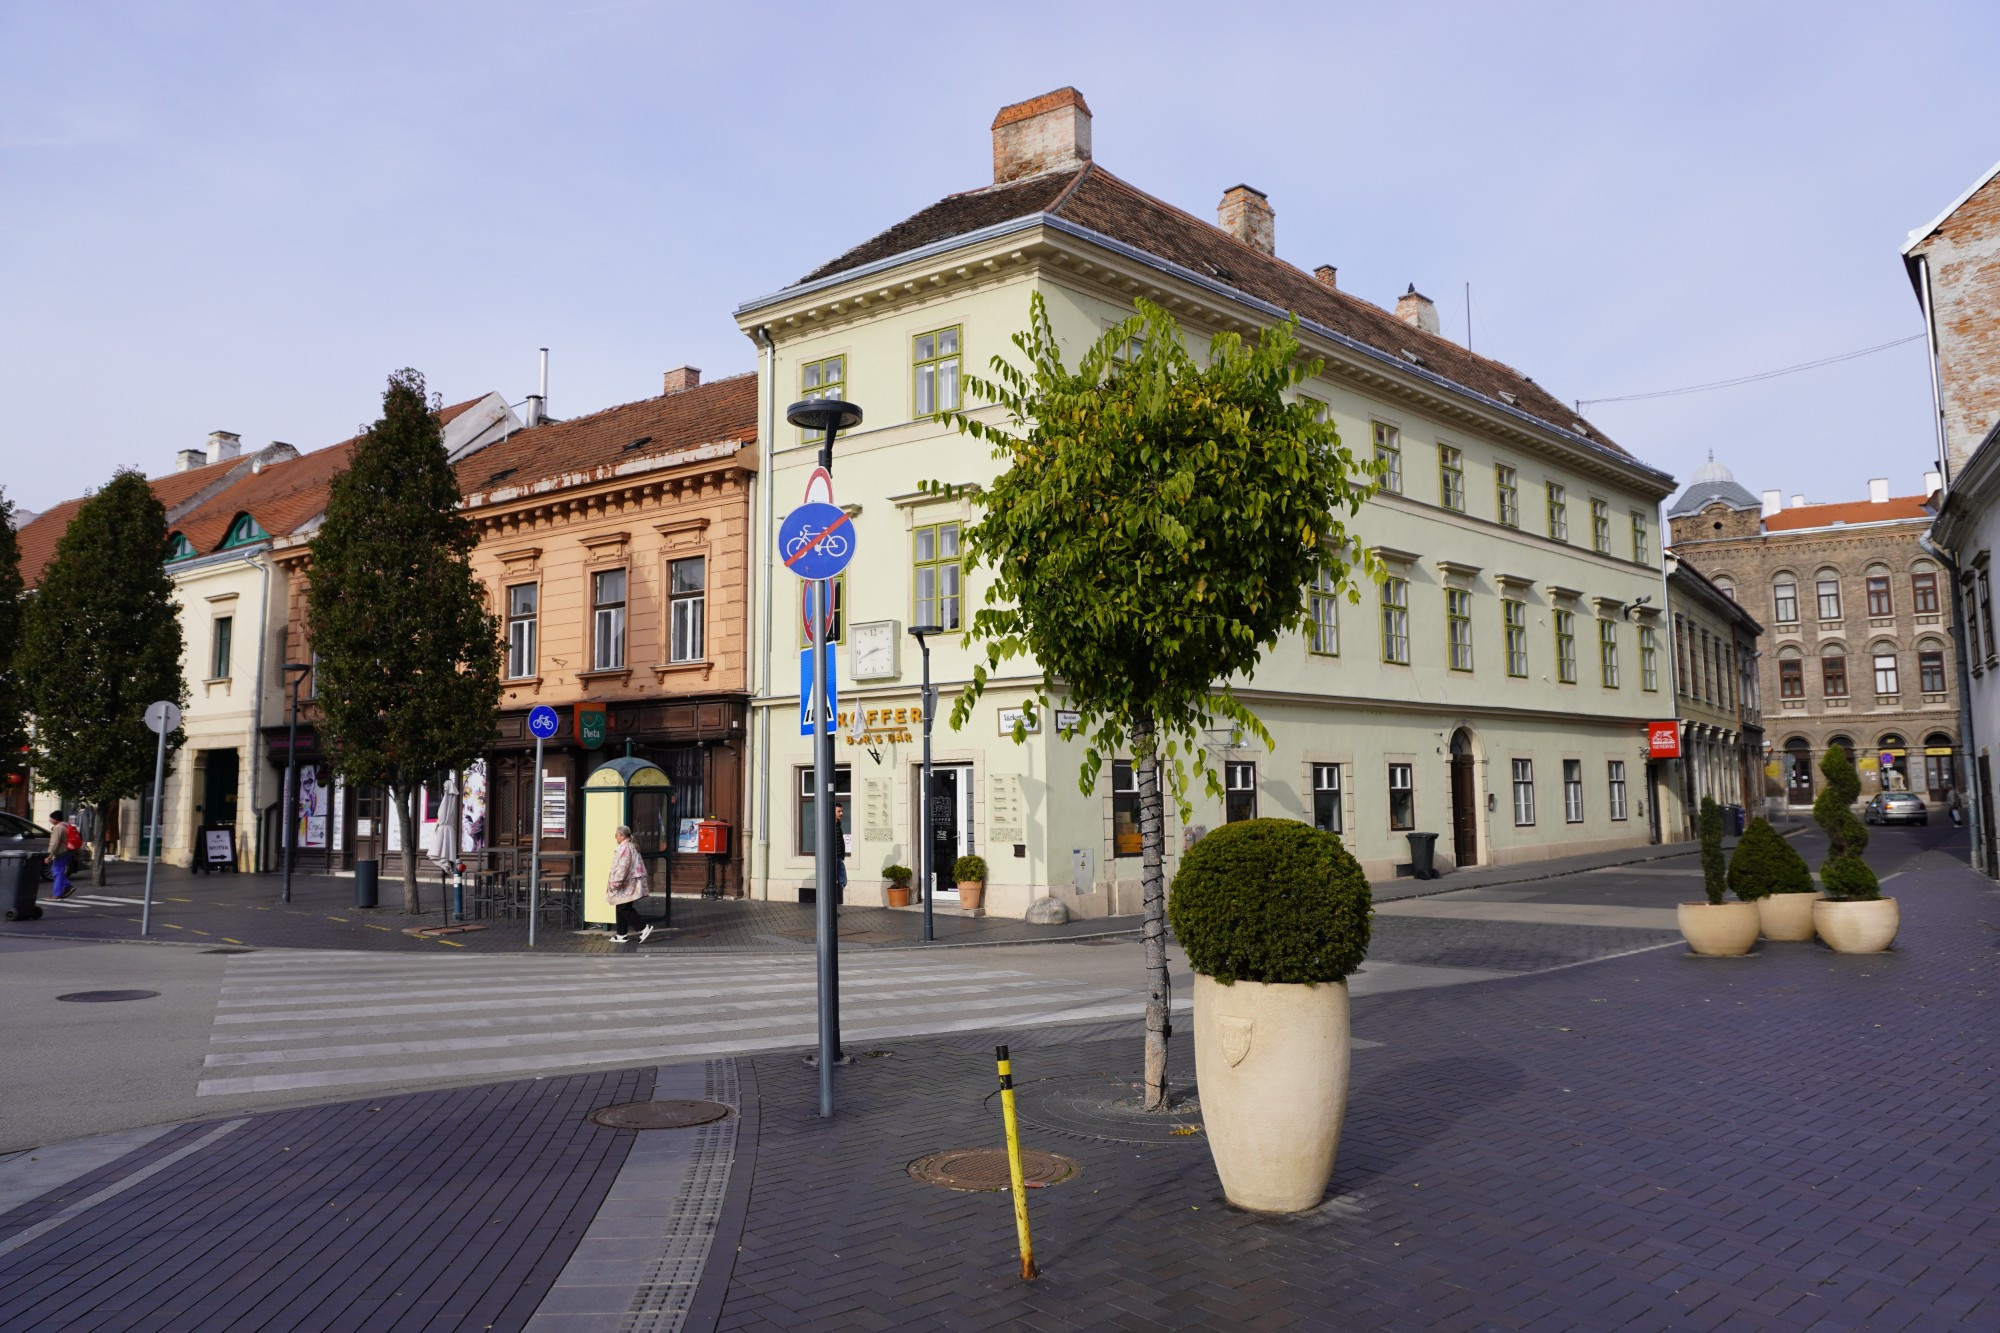 Sopron, Hungary